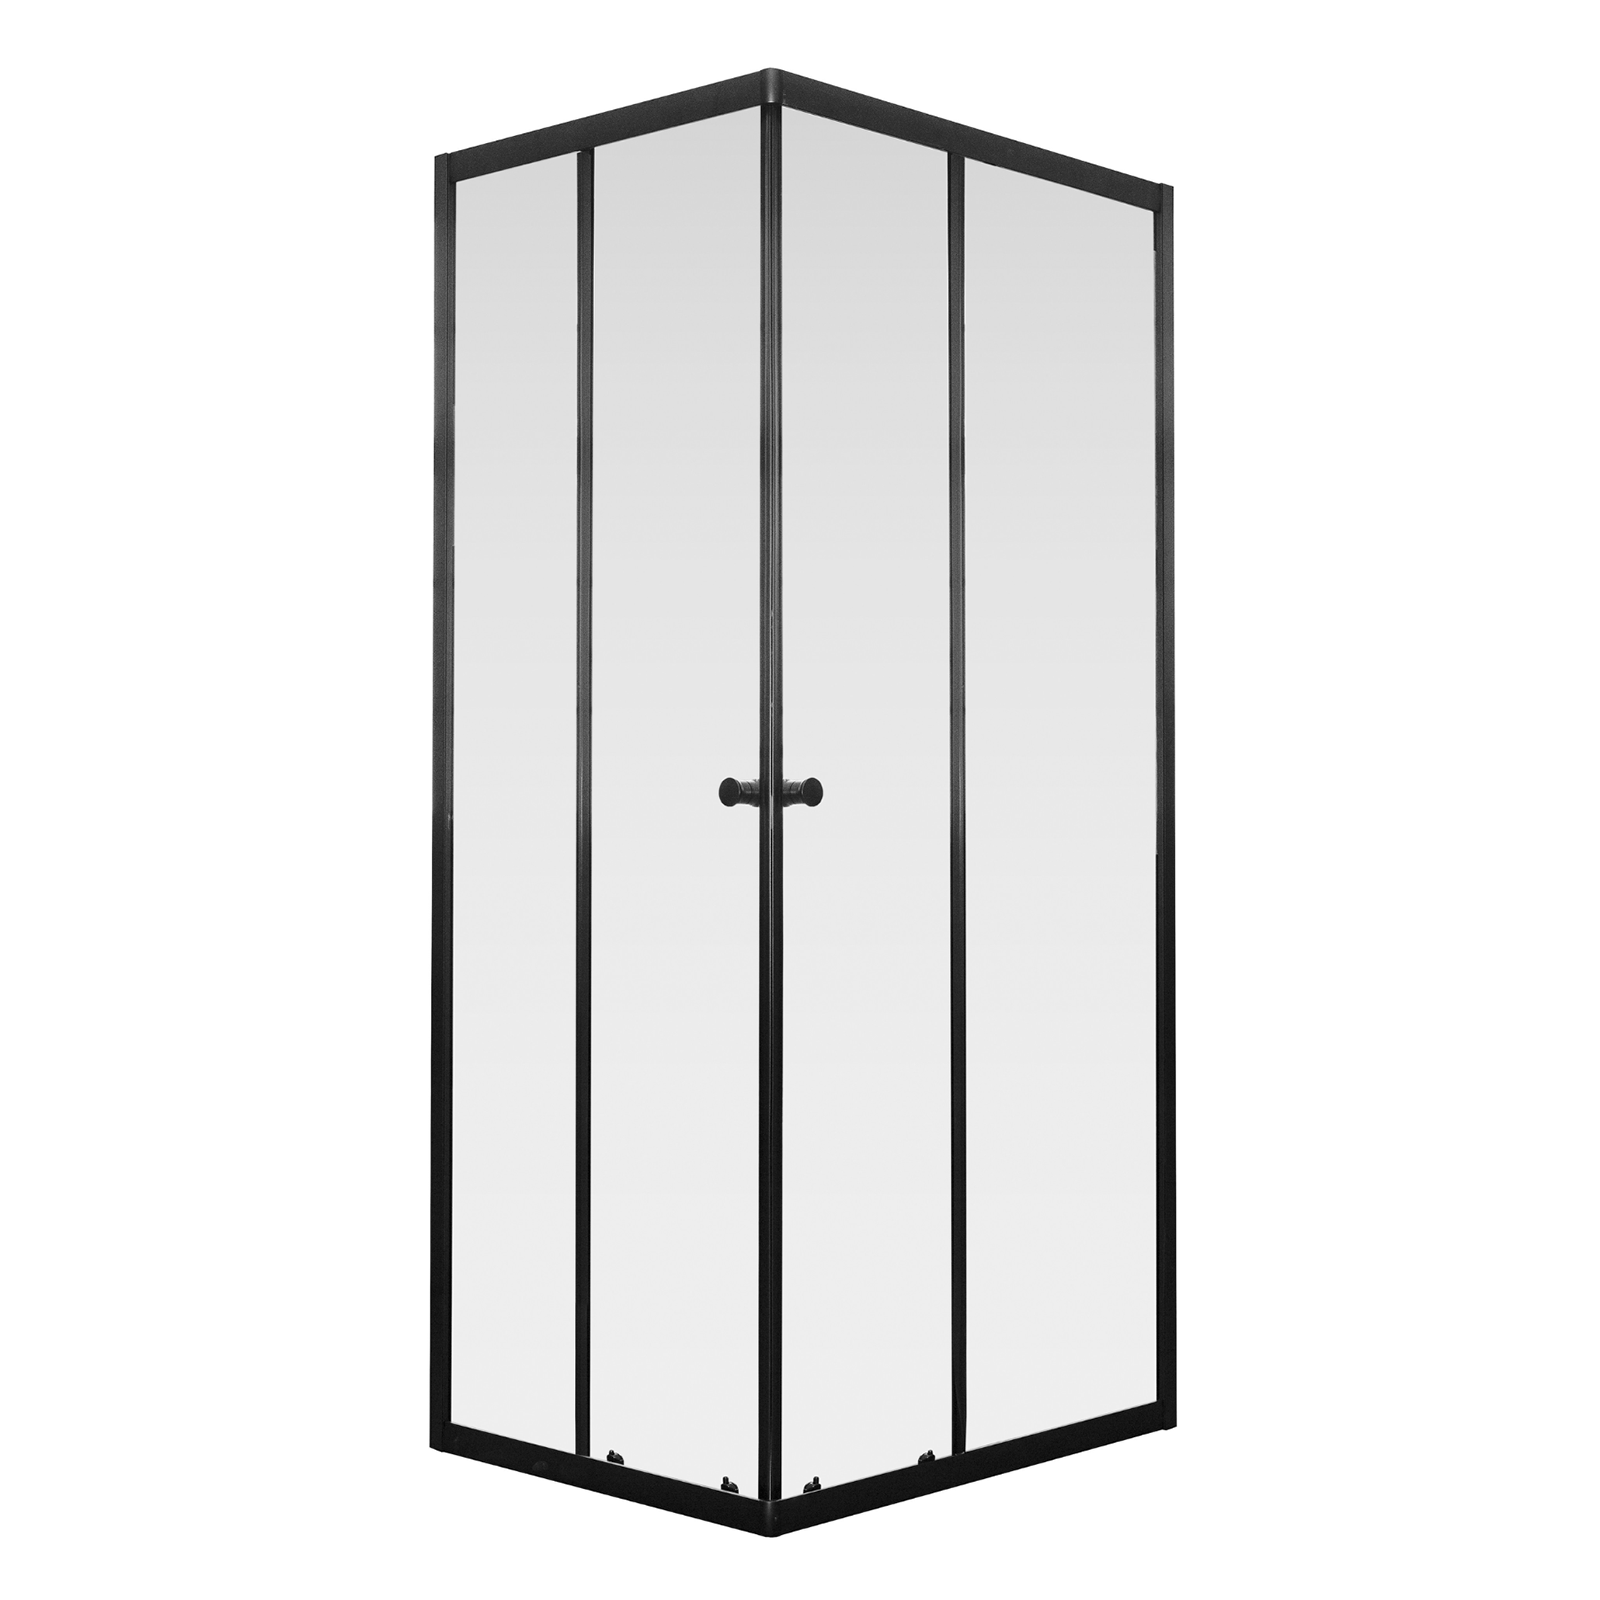 Cabine de douche d'angle avec portes coulissantes Cristal en aluminium noir mat 185 cm h